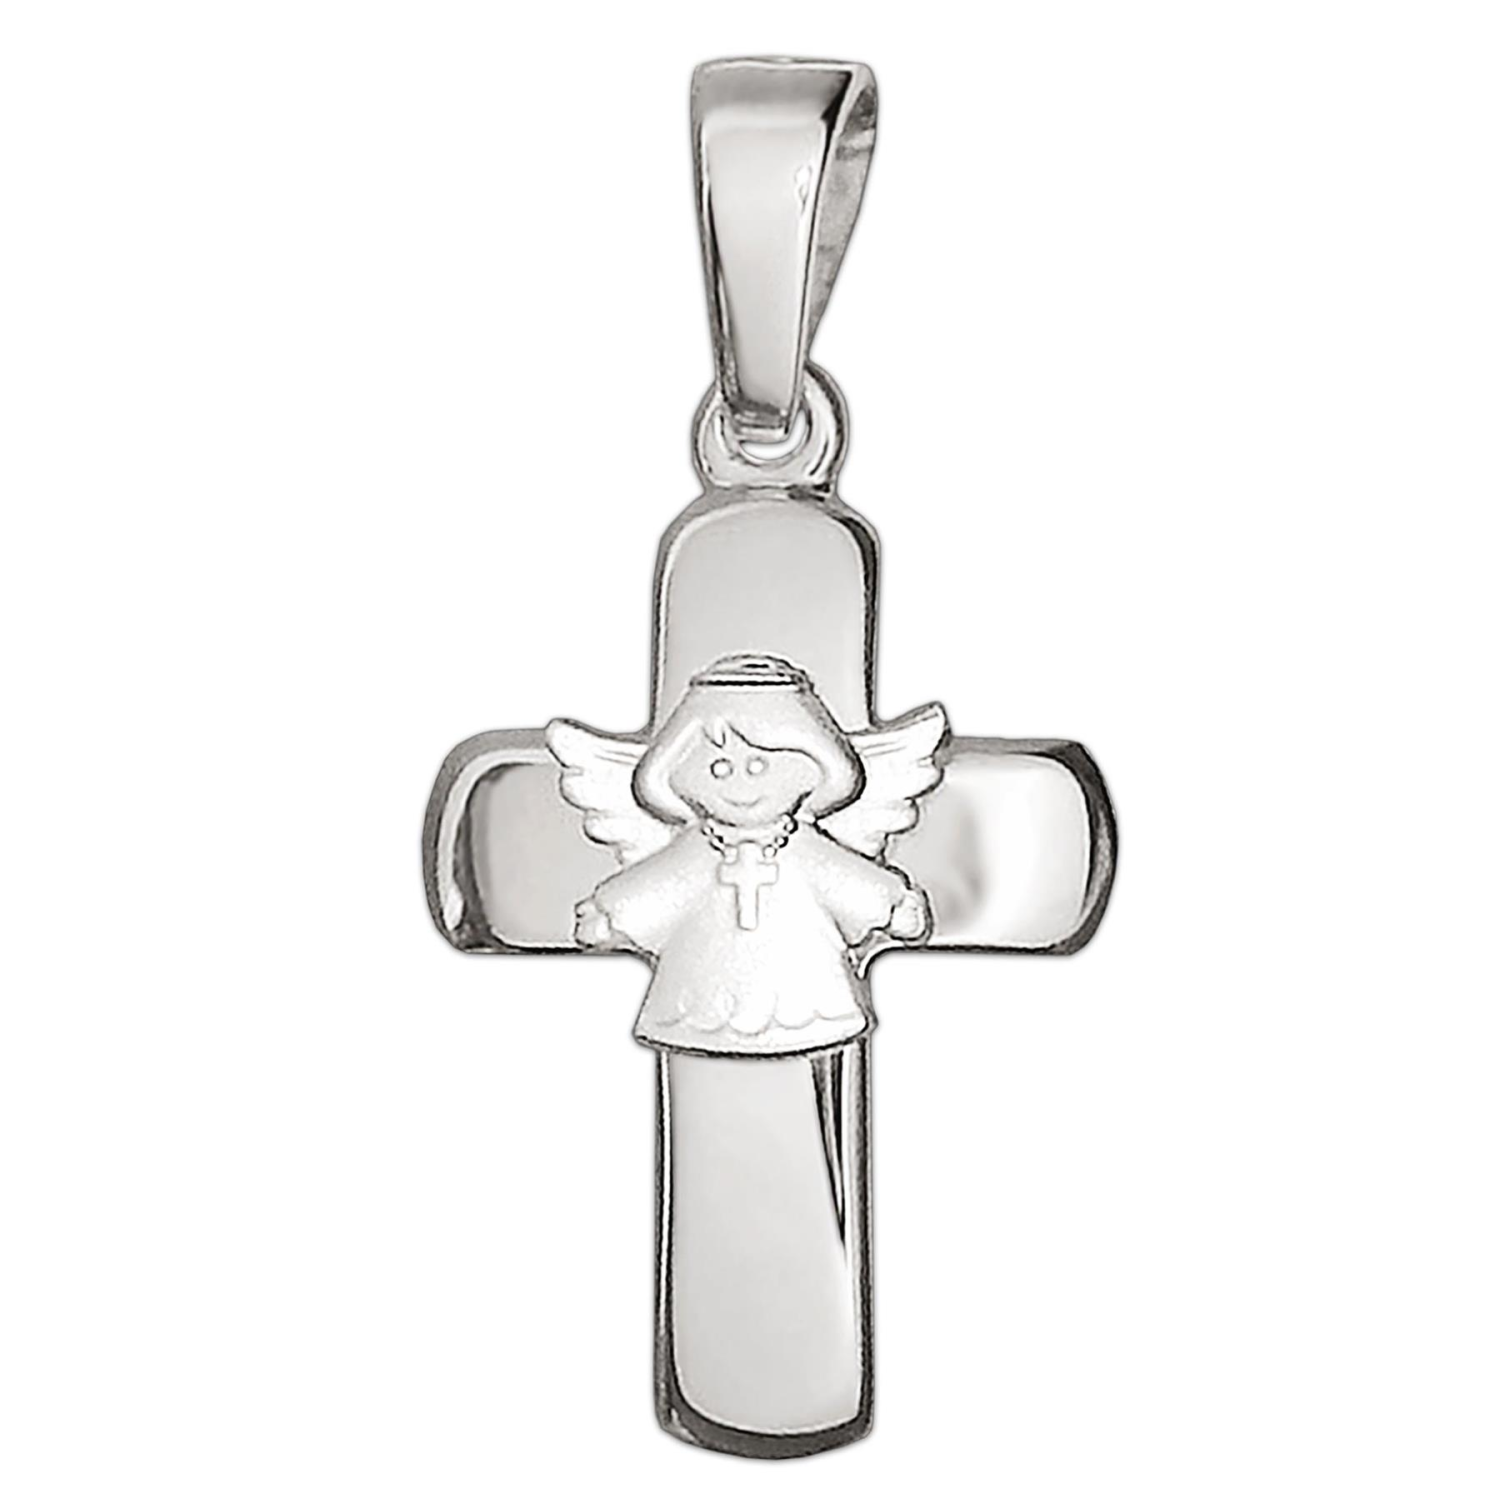 Silberner Kinderkreuz Anhänger 15 mm glänzend in der Mitte mit Schutzengel kindlich matt Echt Silber 925